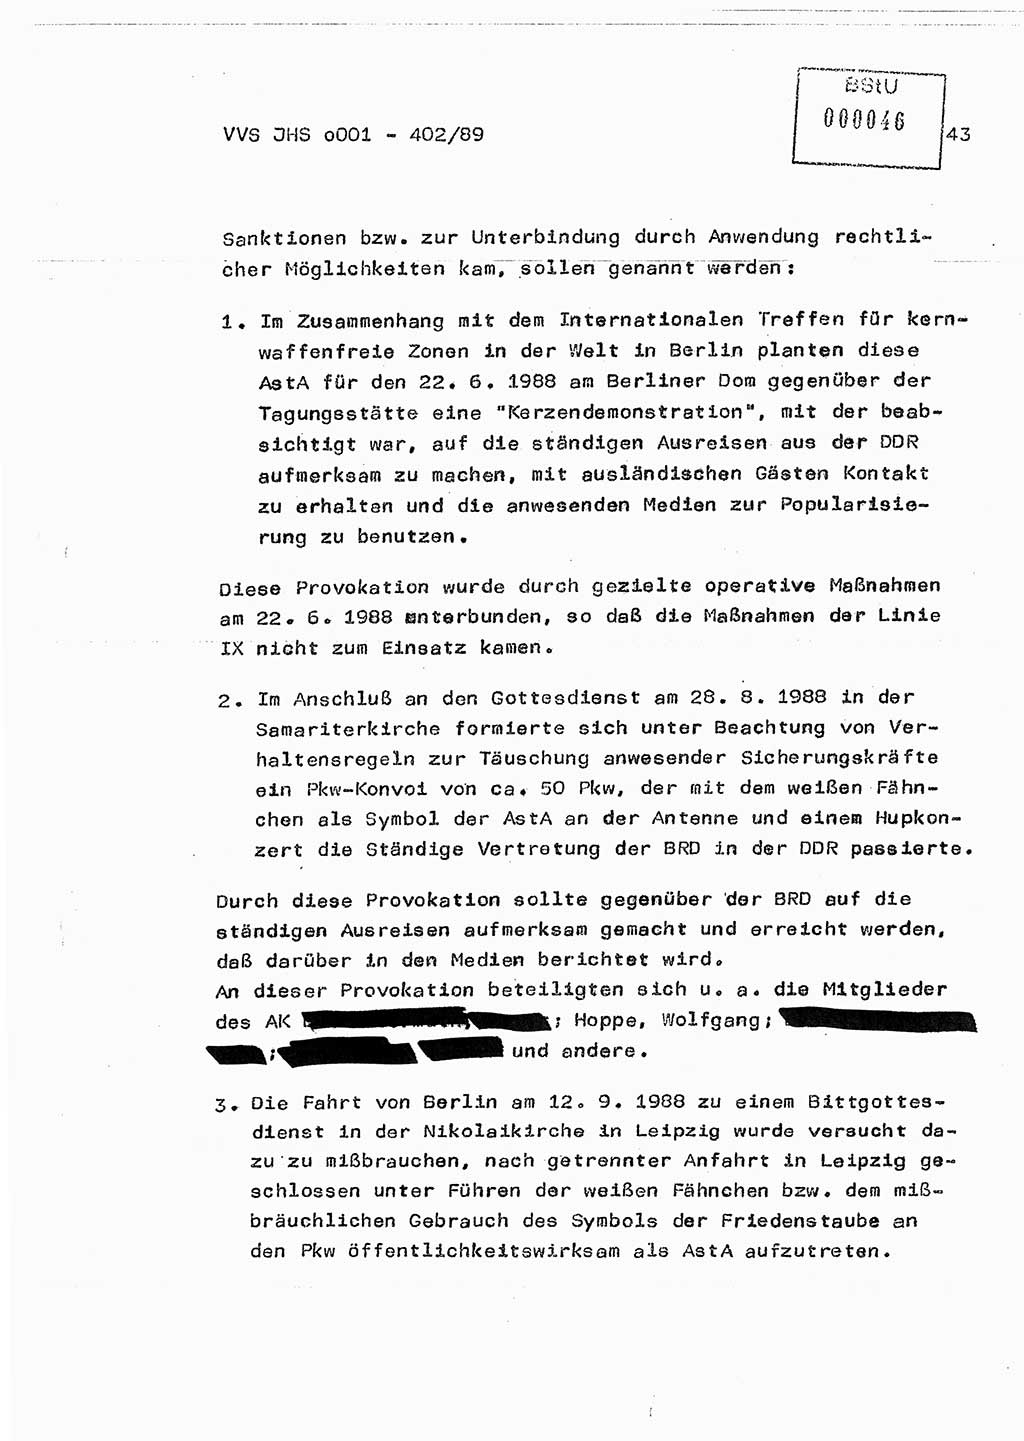 Diplomarbeit Major Günter Müller (HA Ⅸ/9), Ministerium für Staatssicherheit (MfS) [Deutsche Demokratische Republik (DDR)], Juristische Hochschule (JHS), Vertrauliche Verschlußsache (VVS) o001-402/89, Potsdam 1989, Seite 43 (Dipl.-Arb. MfS DDR JHS VVS o001-402/89 1989, S. 43)